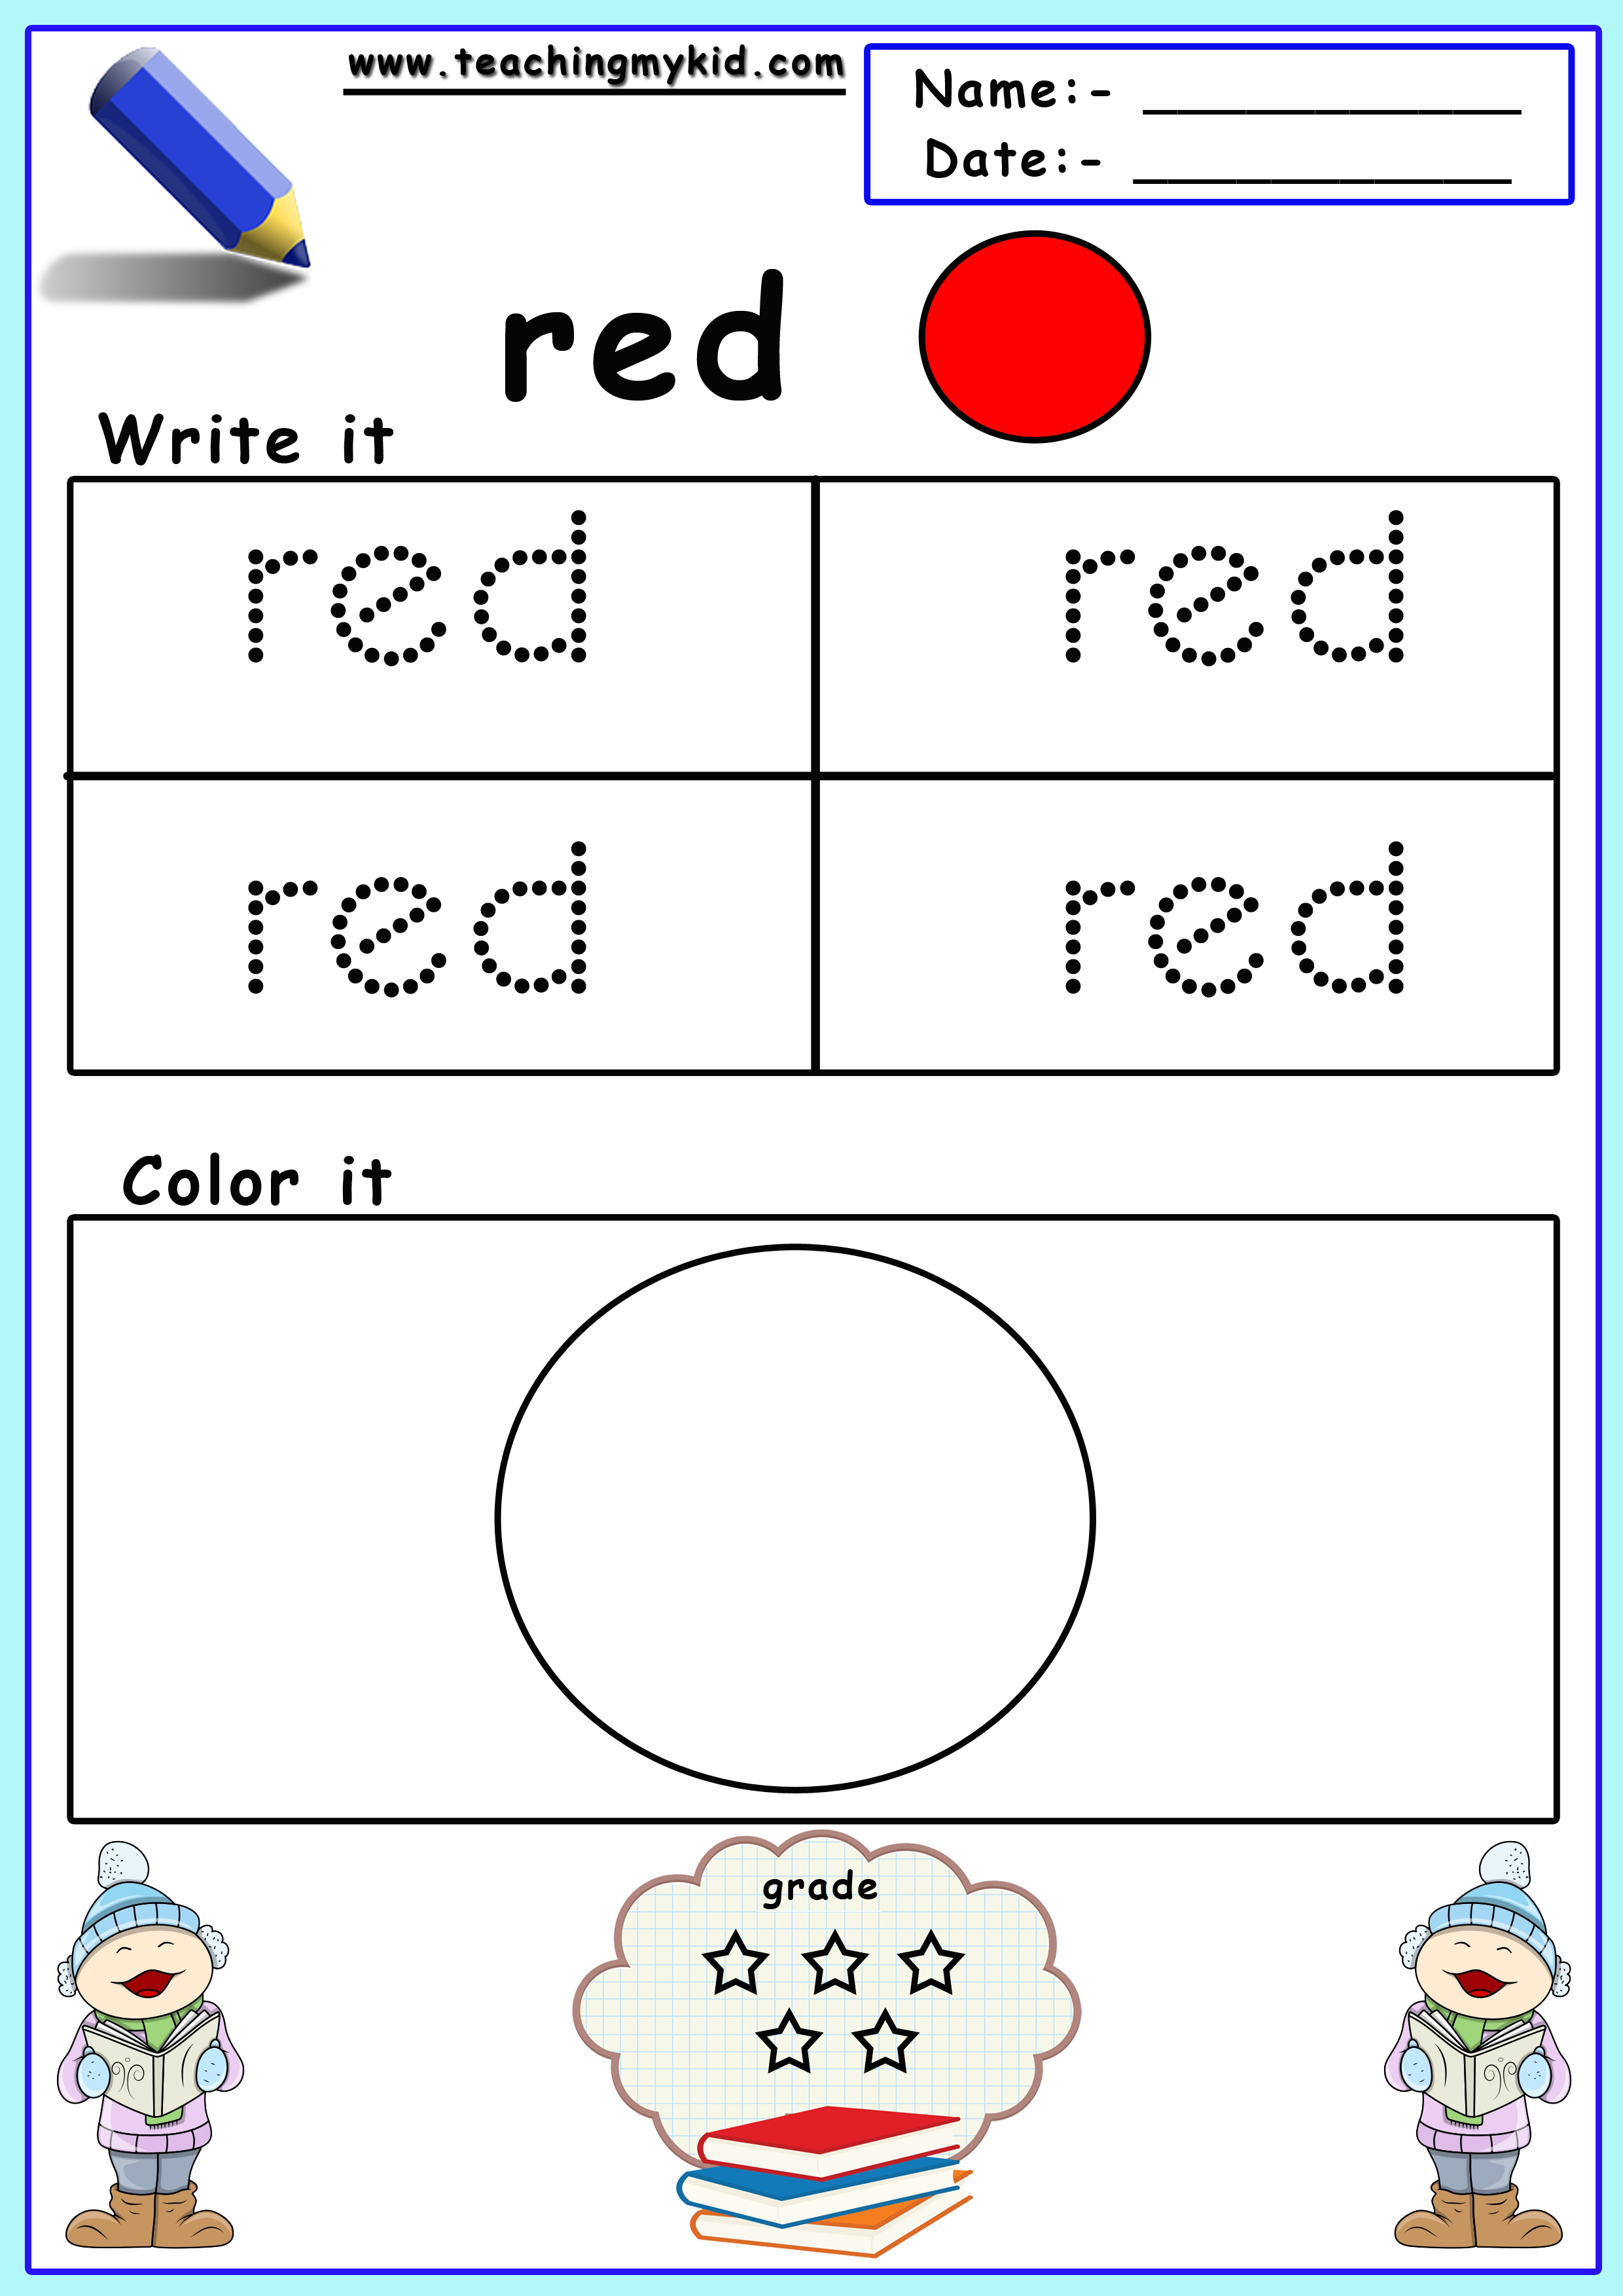 free-printable-preschool-worksheets-color-identification-teaching